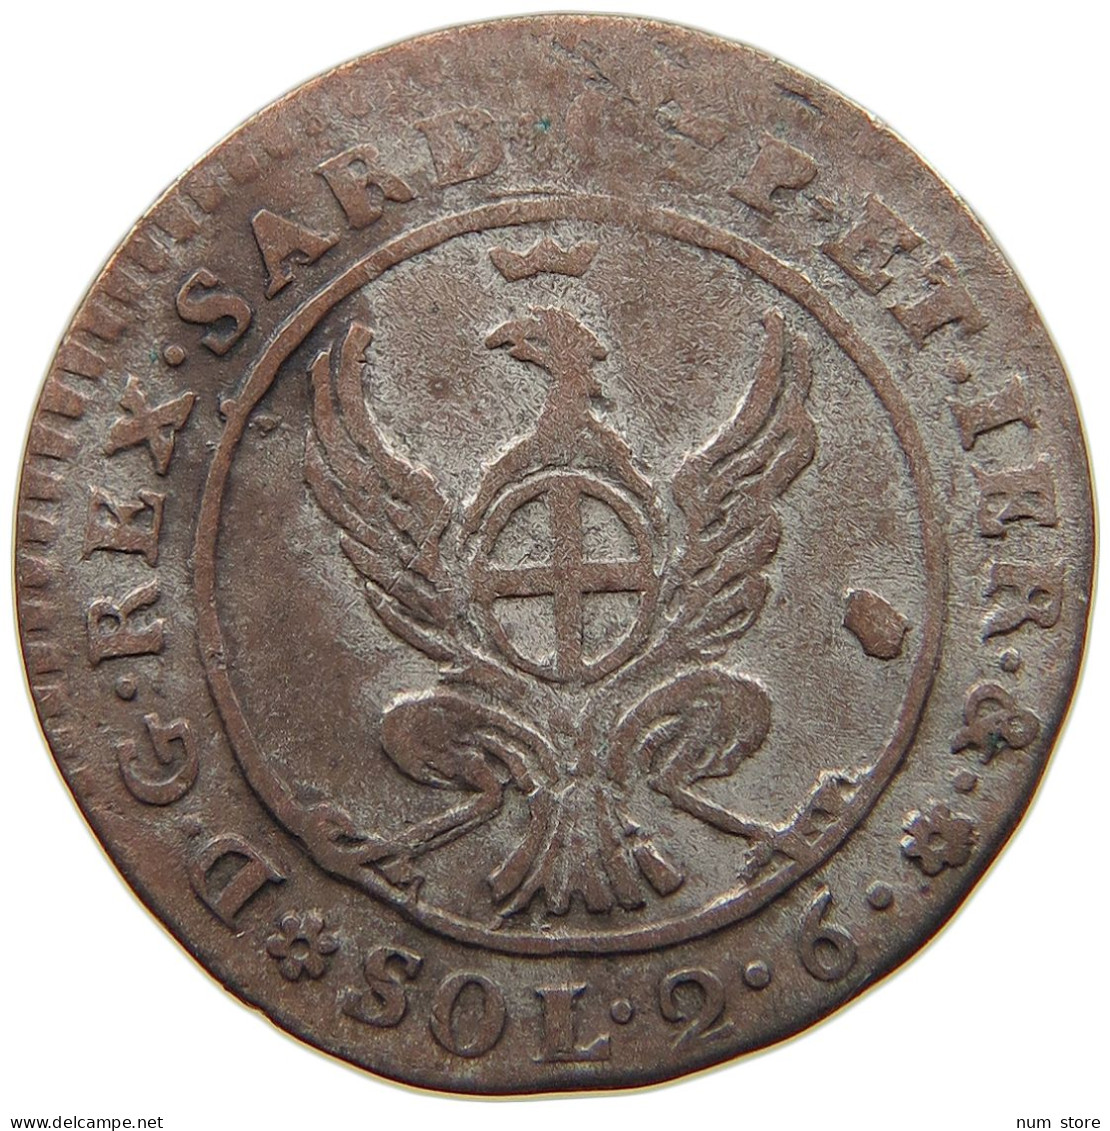 ITALY STATES SARDINIA 2.6 SOLDI 1798 CARLO EMANUELE IV. (1796-1802) #t107 0421 - Italian Piedmont-Sardinia-Savoie